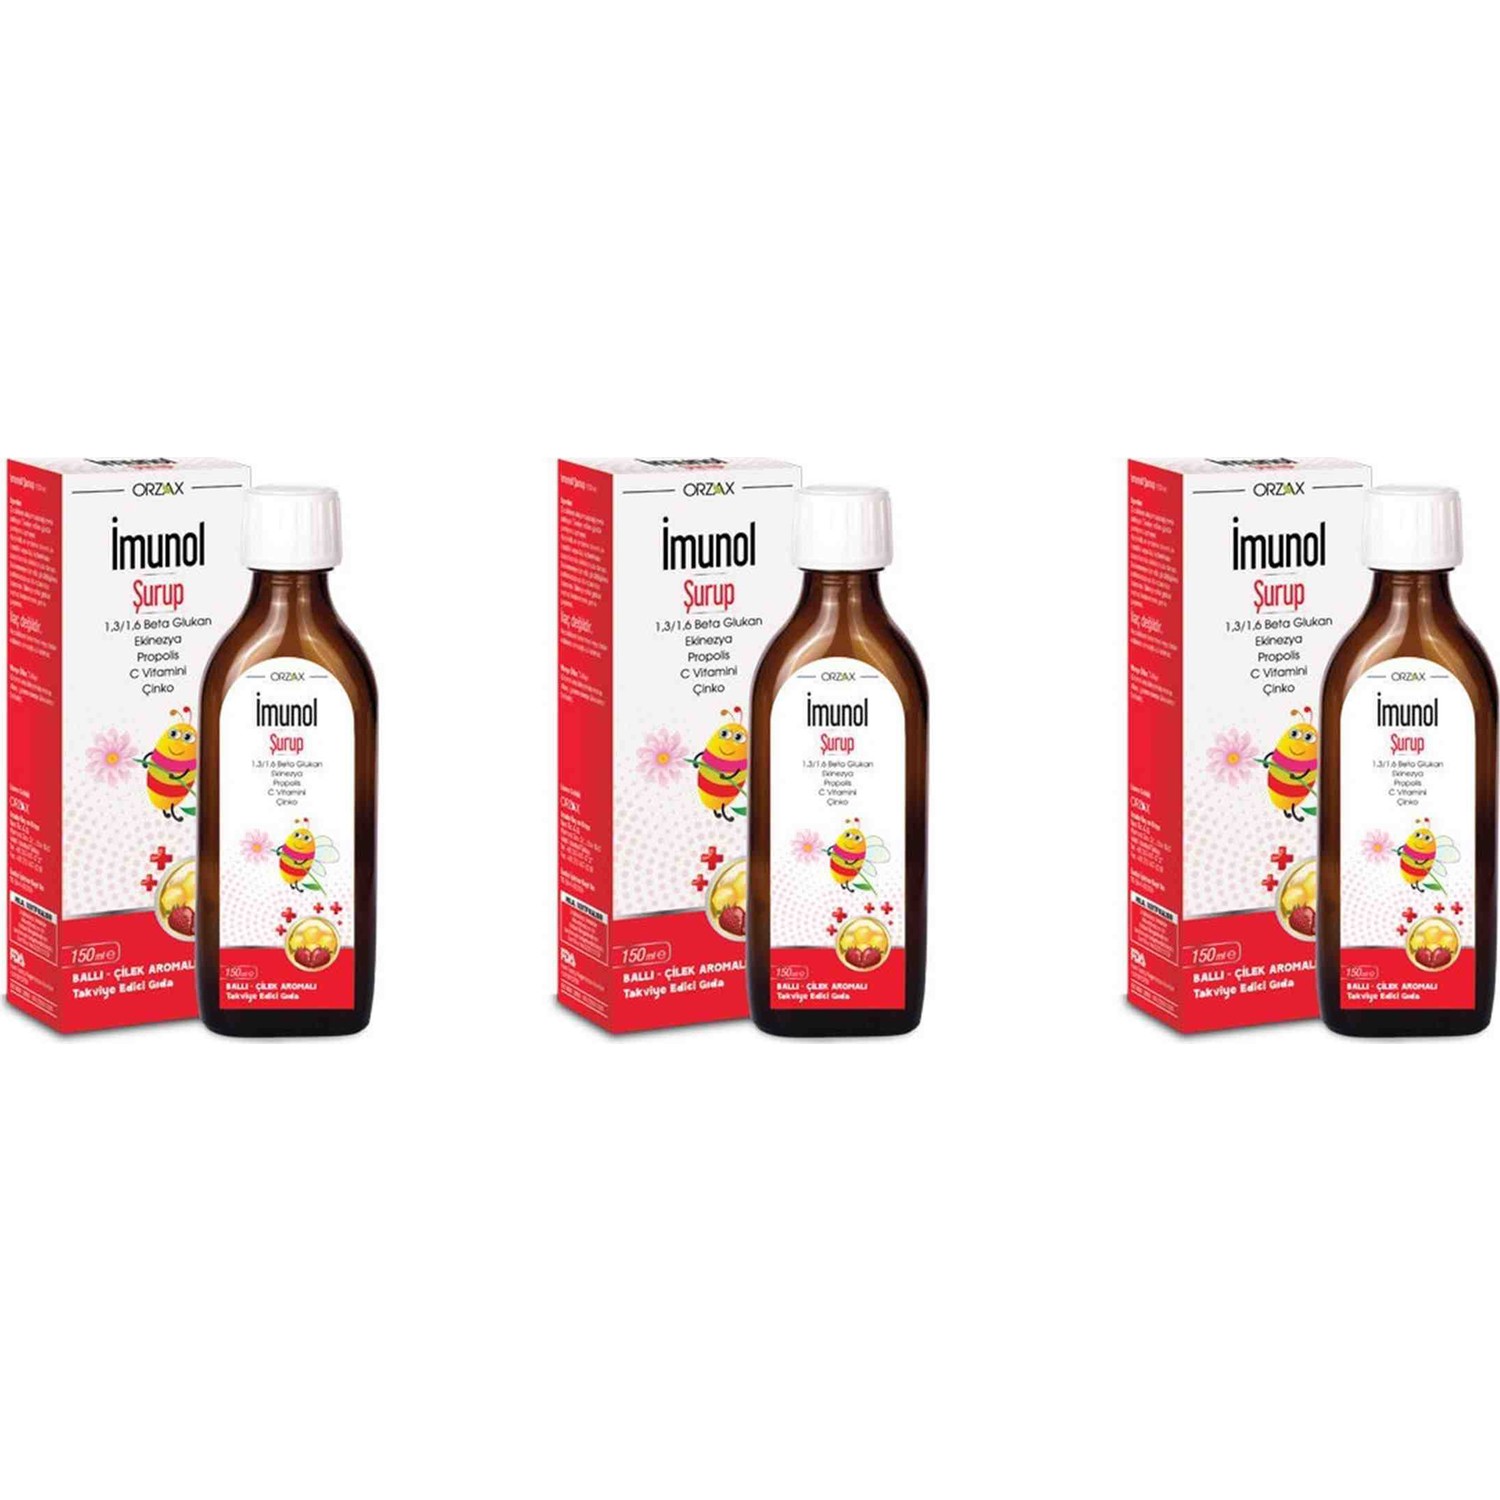 Сироп имунол Orzax с медово-клубничным вкусом, 3 упаковки по 150 мл имунол бузинный сироп orzax 4 упаковки по 150 мл